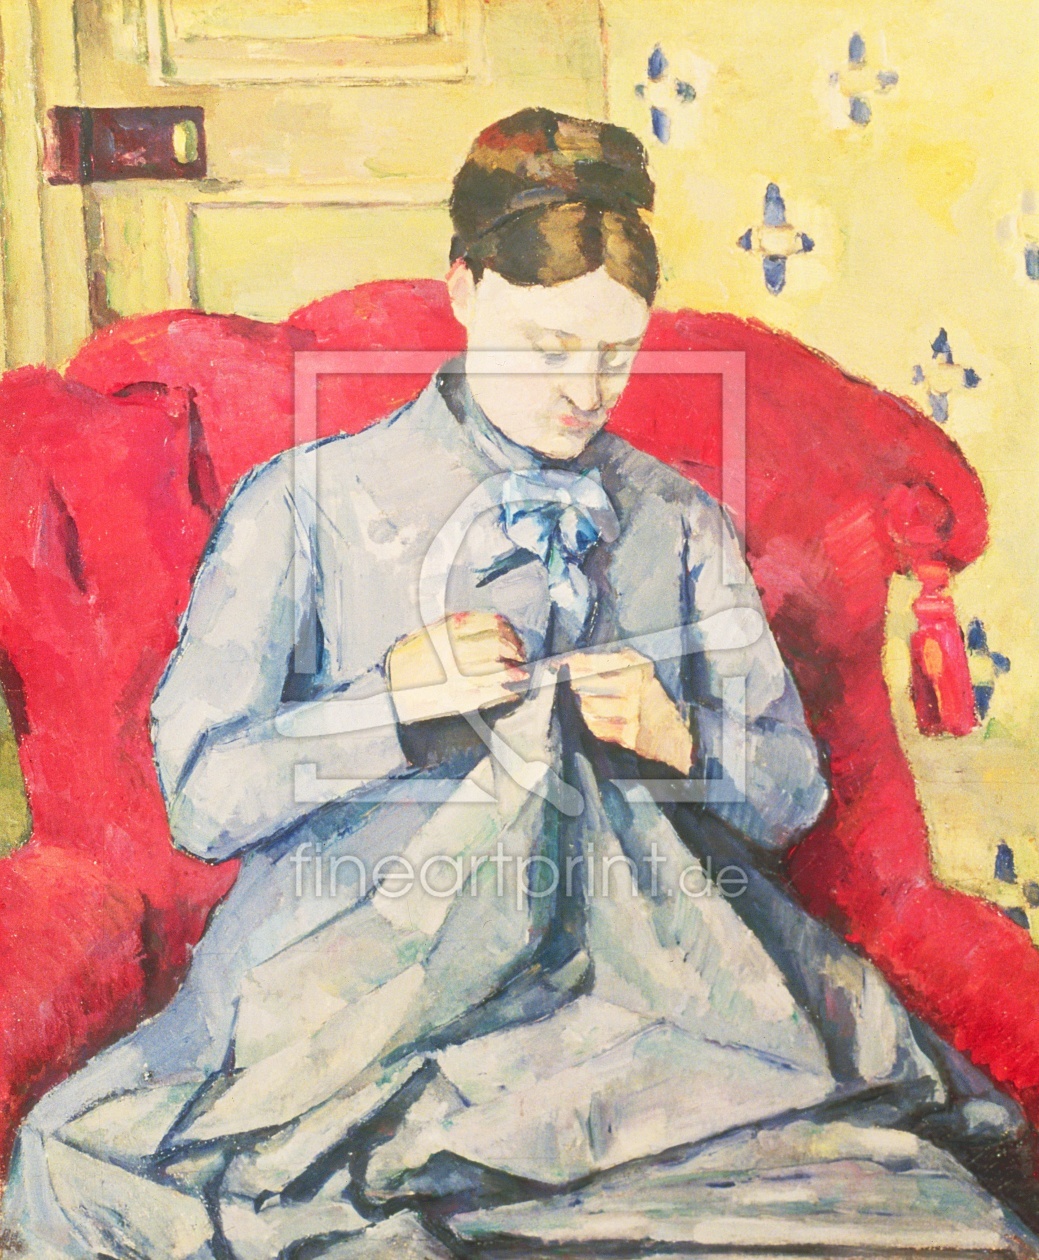 Bild-Nr.: 31002178 Madame Cezanne sewing erstellt von Cezanne, Paul